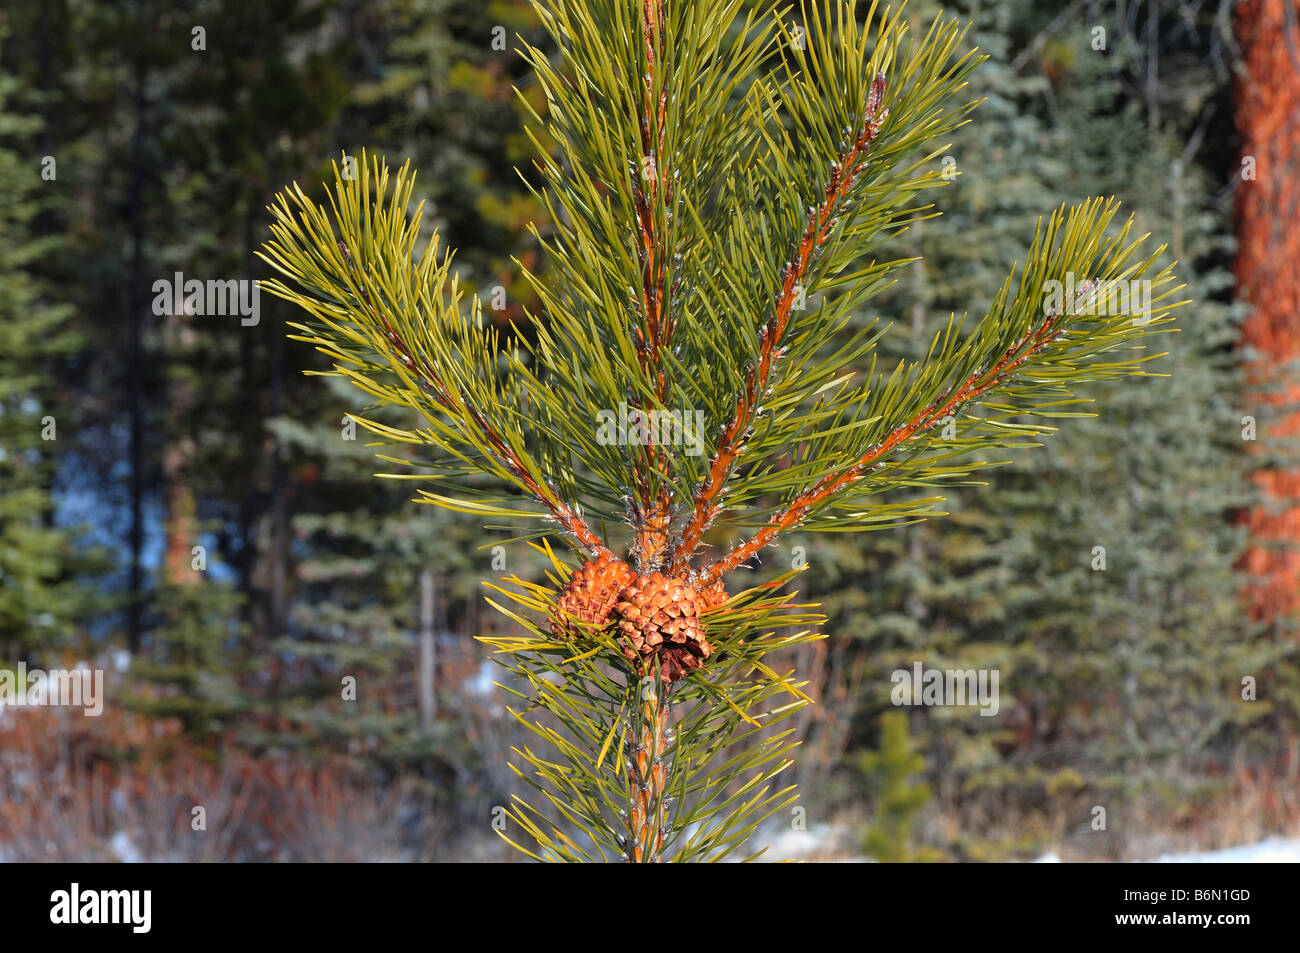 Pine tree cones 0803 Stock Photo